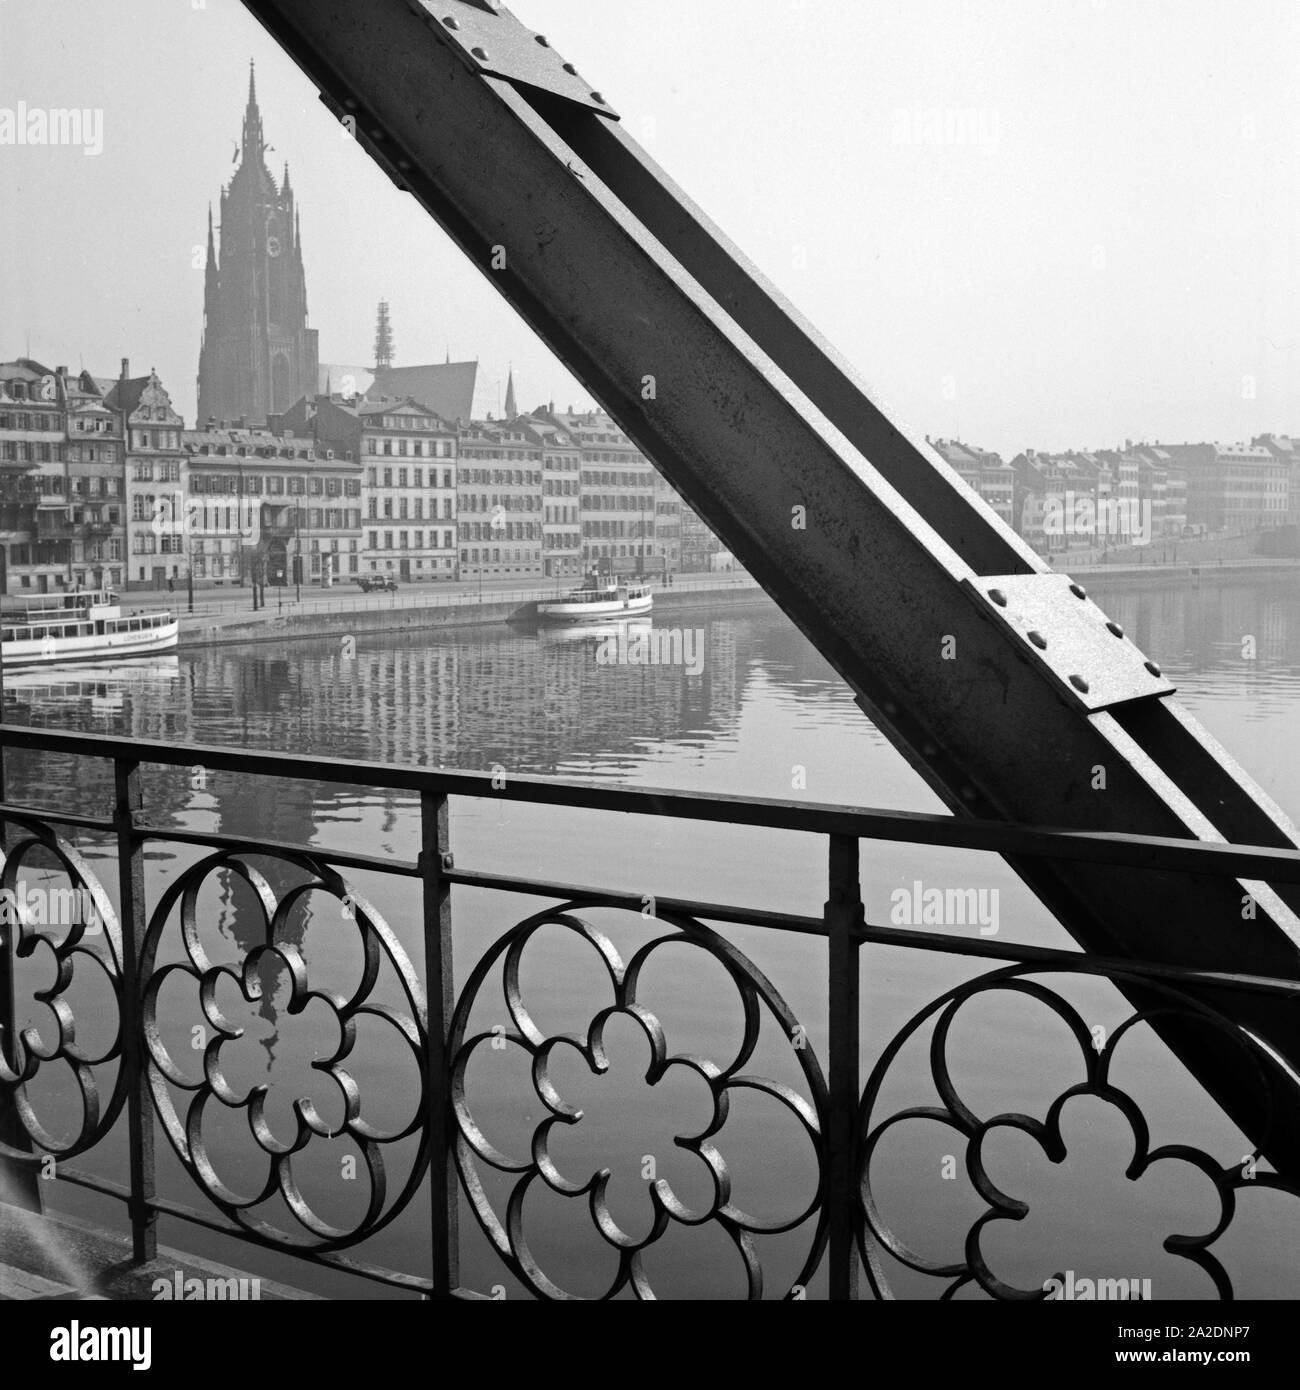 Blick von der Brücke Eiserner Steg auf die Altstadt von Frankfurt am Main, Deutschland 1930er Jahre. Vista dalla Eiserner Steg ponte per la città vecchia di Francoforte in Germania 1930s. Foto Stock